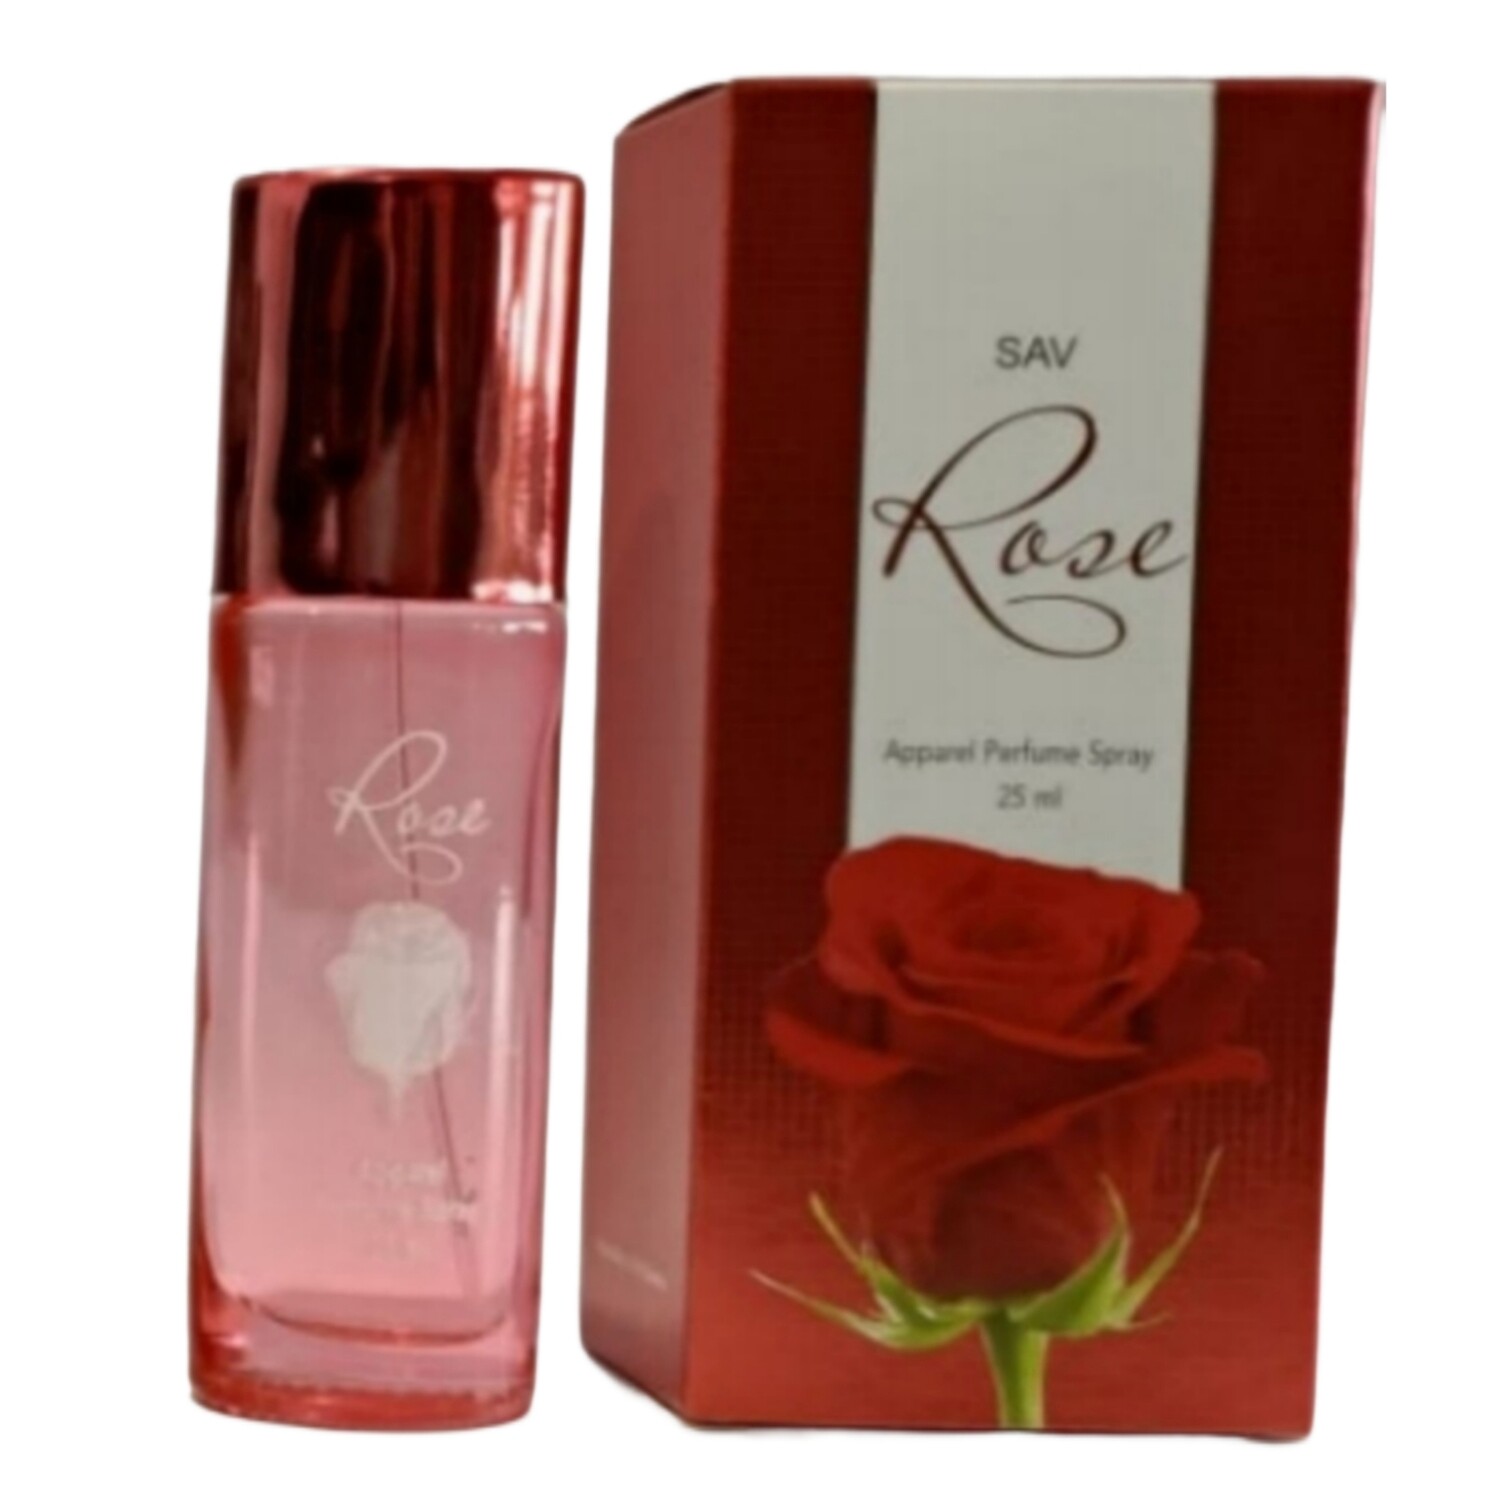 SAV Rose Apparel Perfume Spray 25 ml